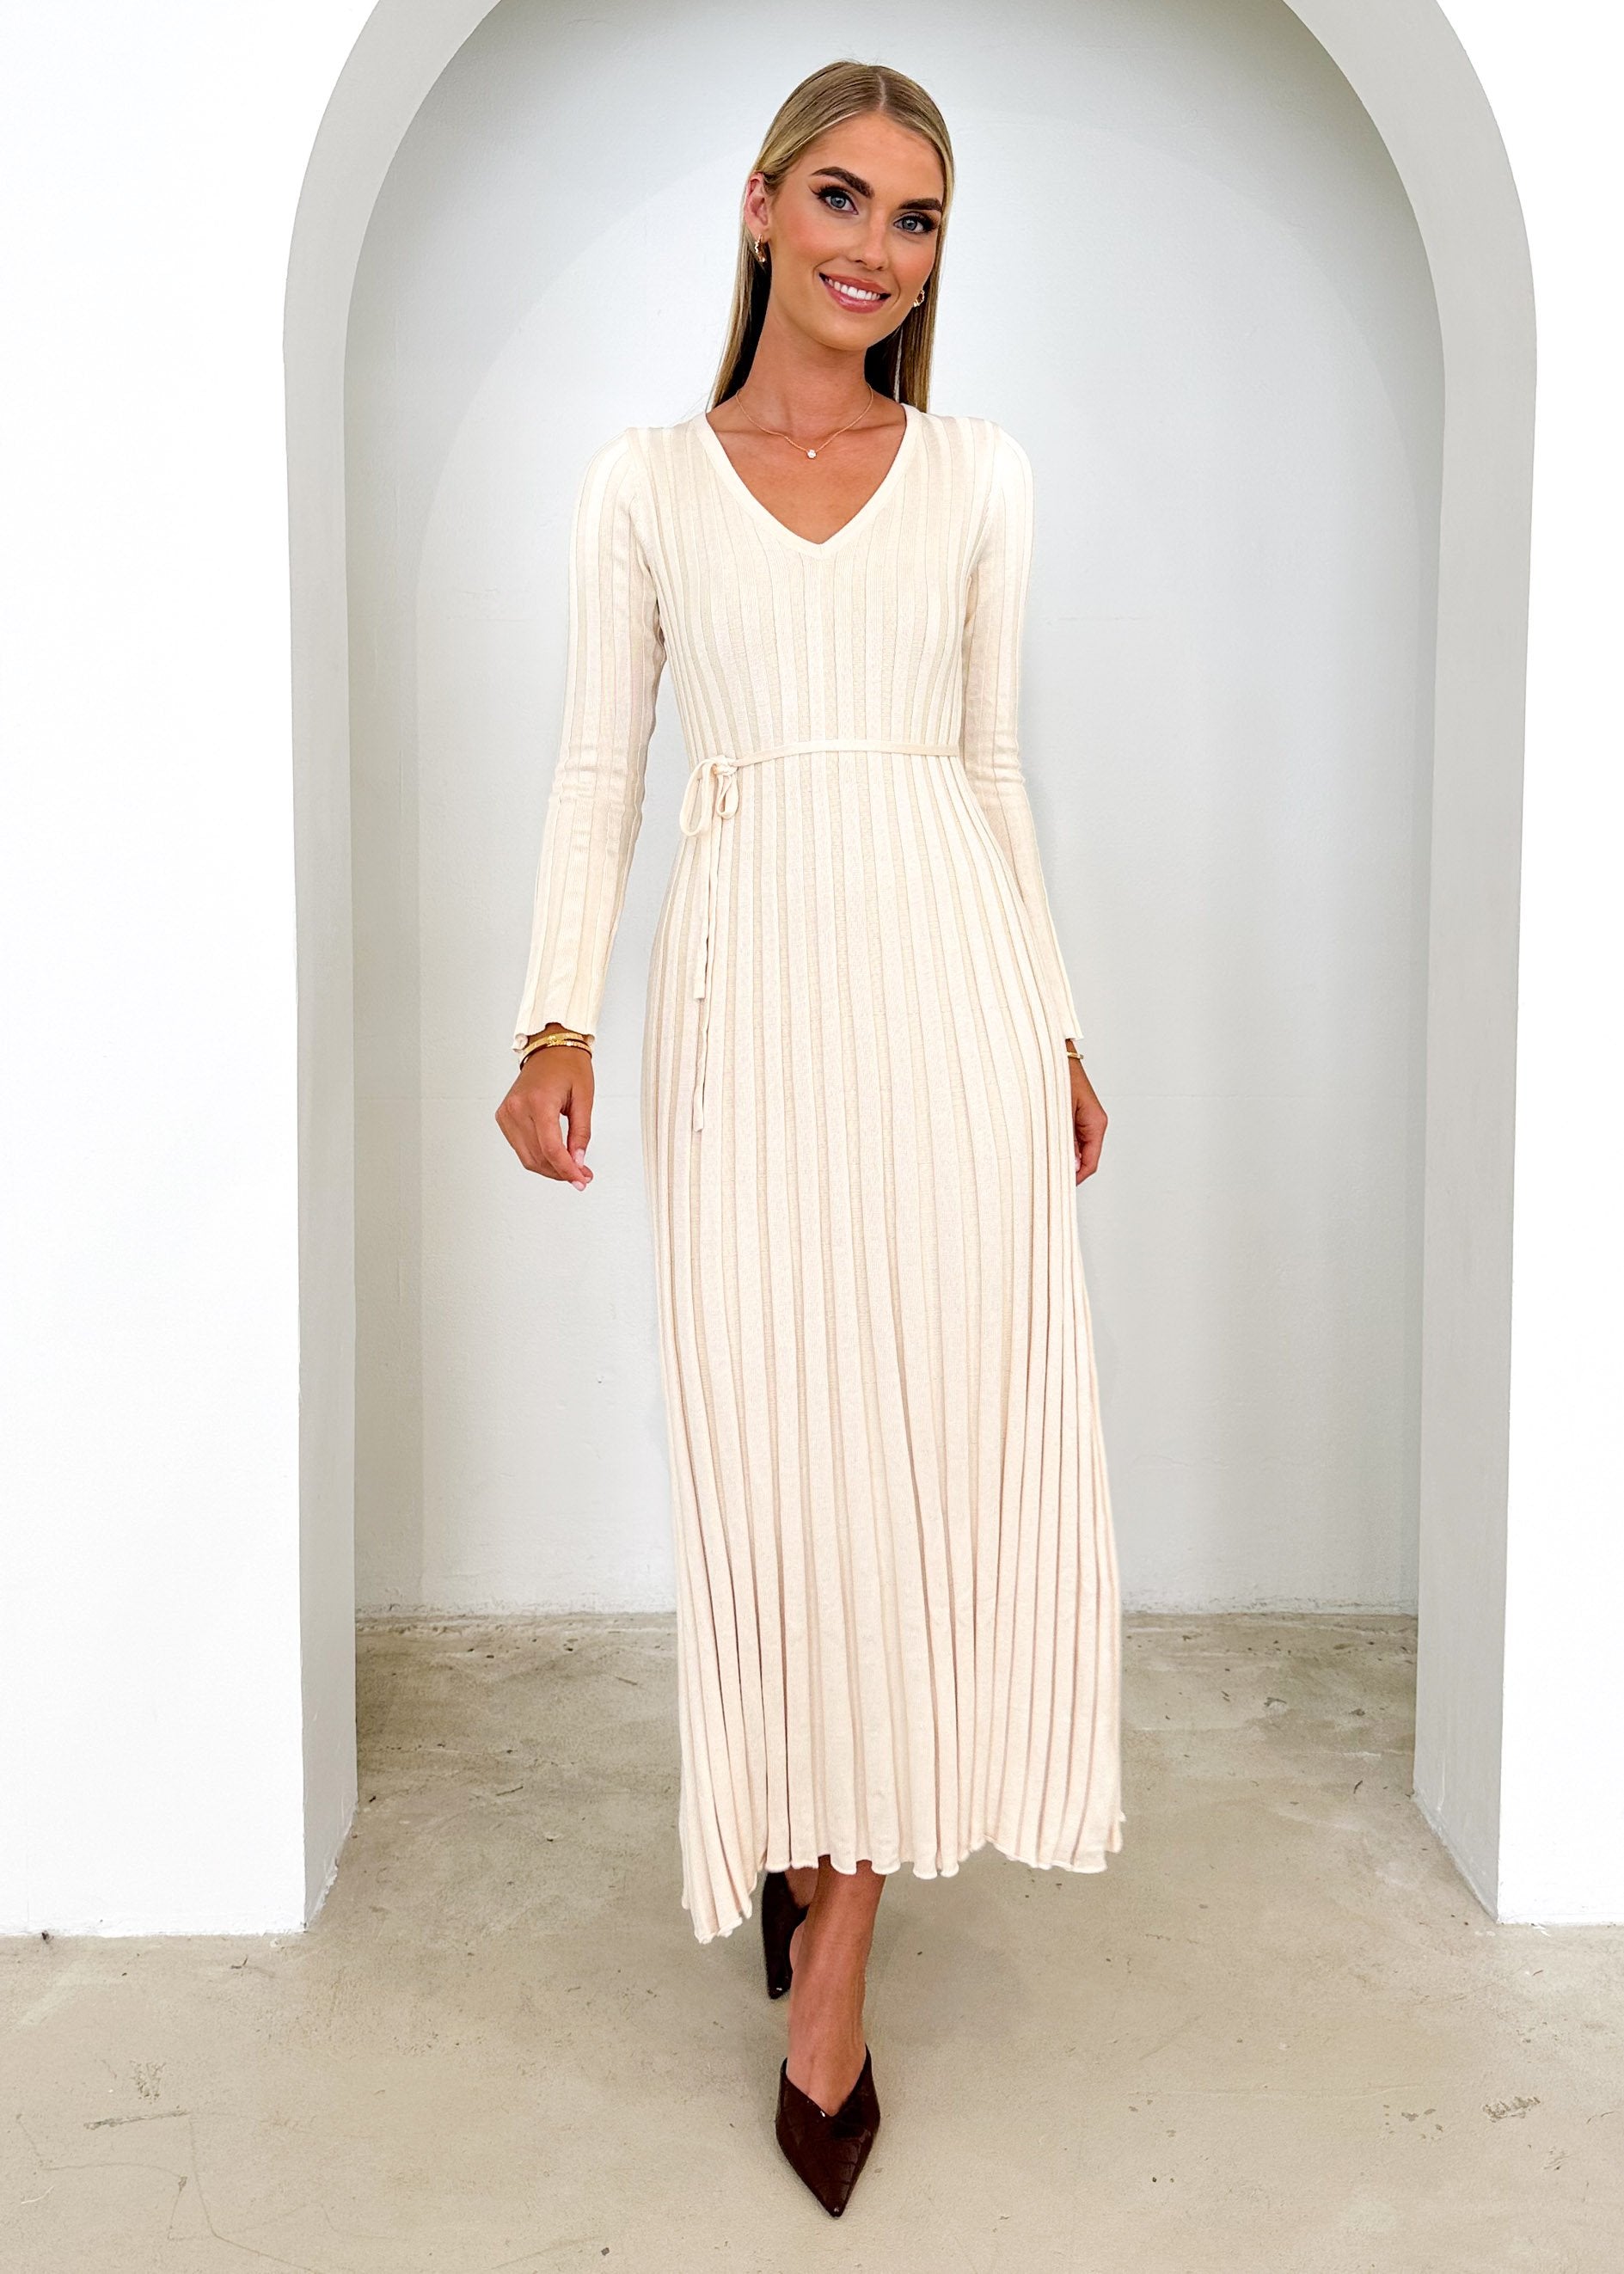 Jelsoe Knit Midi Dress - Cream